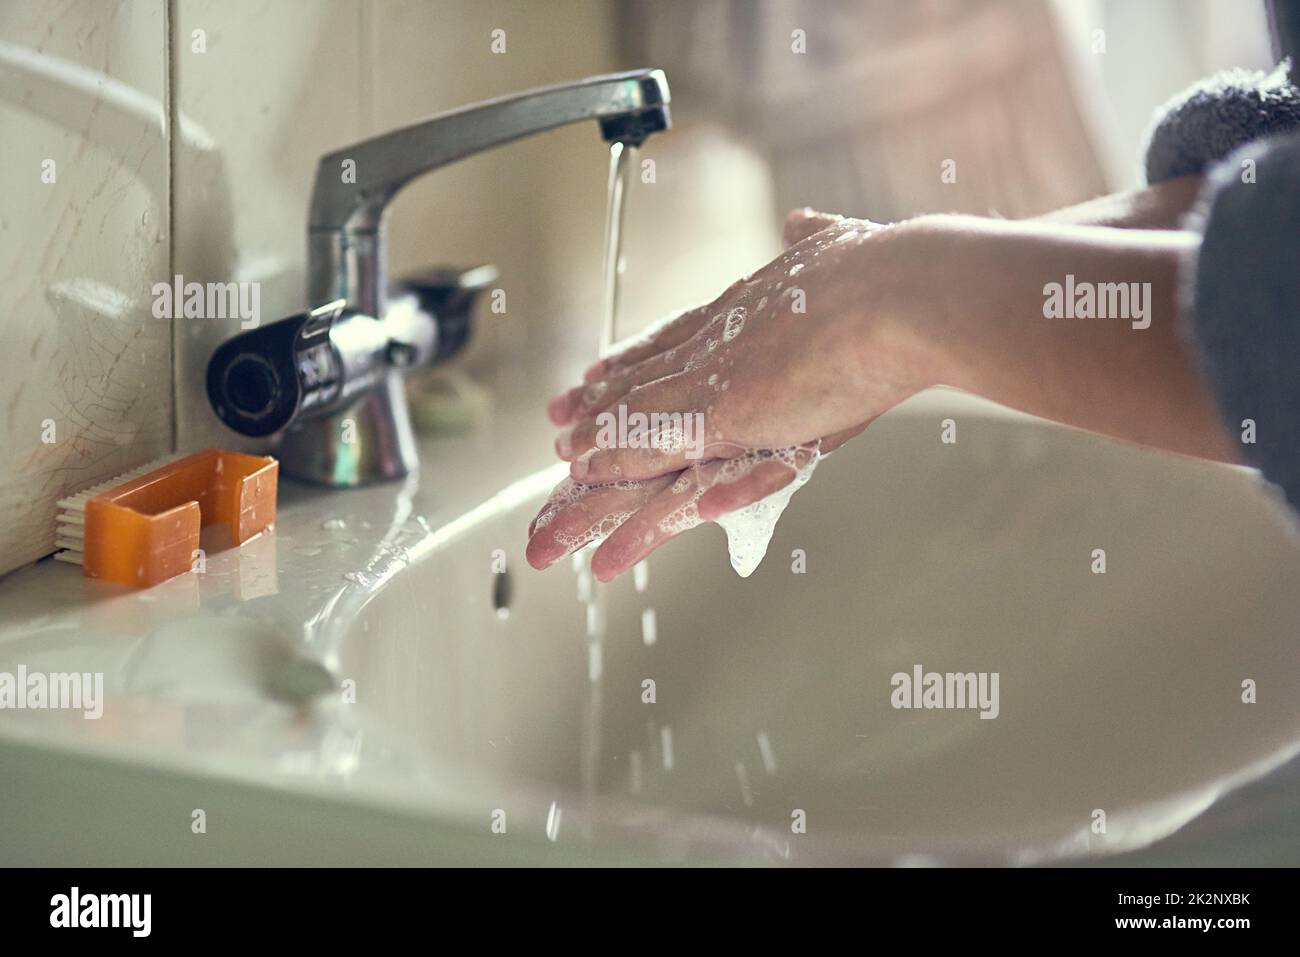 Окр моет руки. Мыло для умывальника. Мытье рук. Раковина для мытья рук. Мыло на раковине.